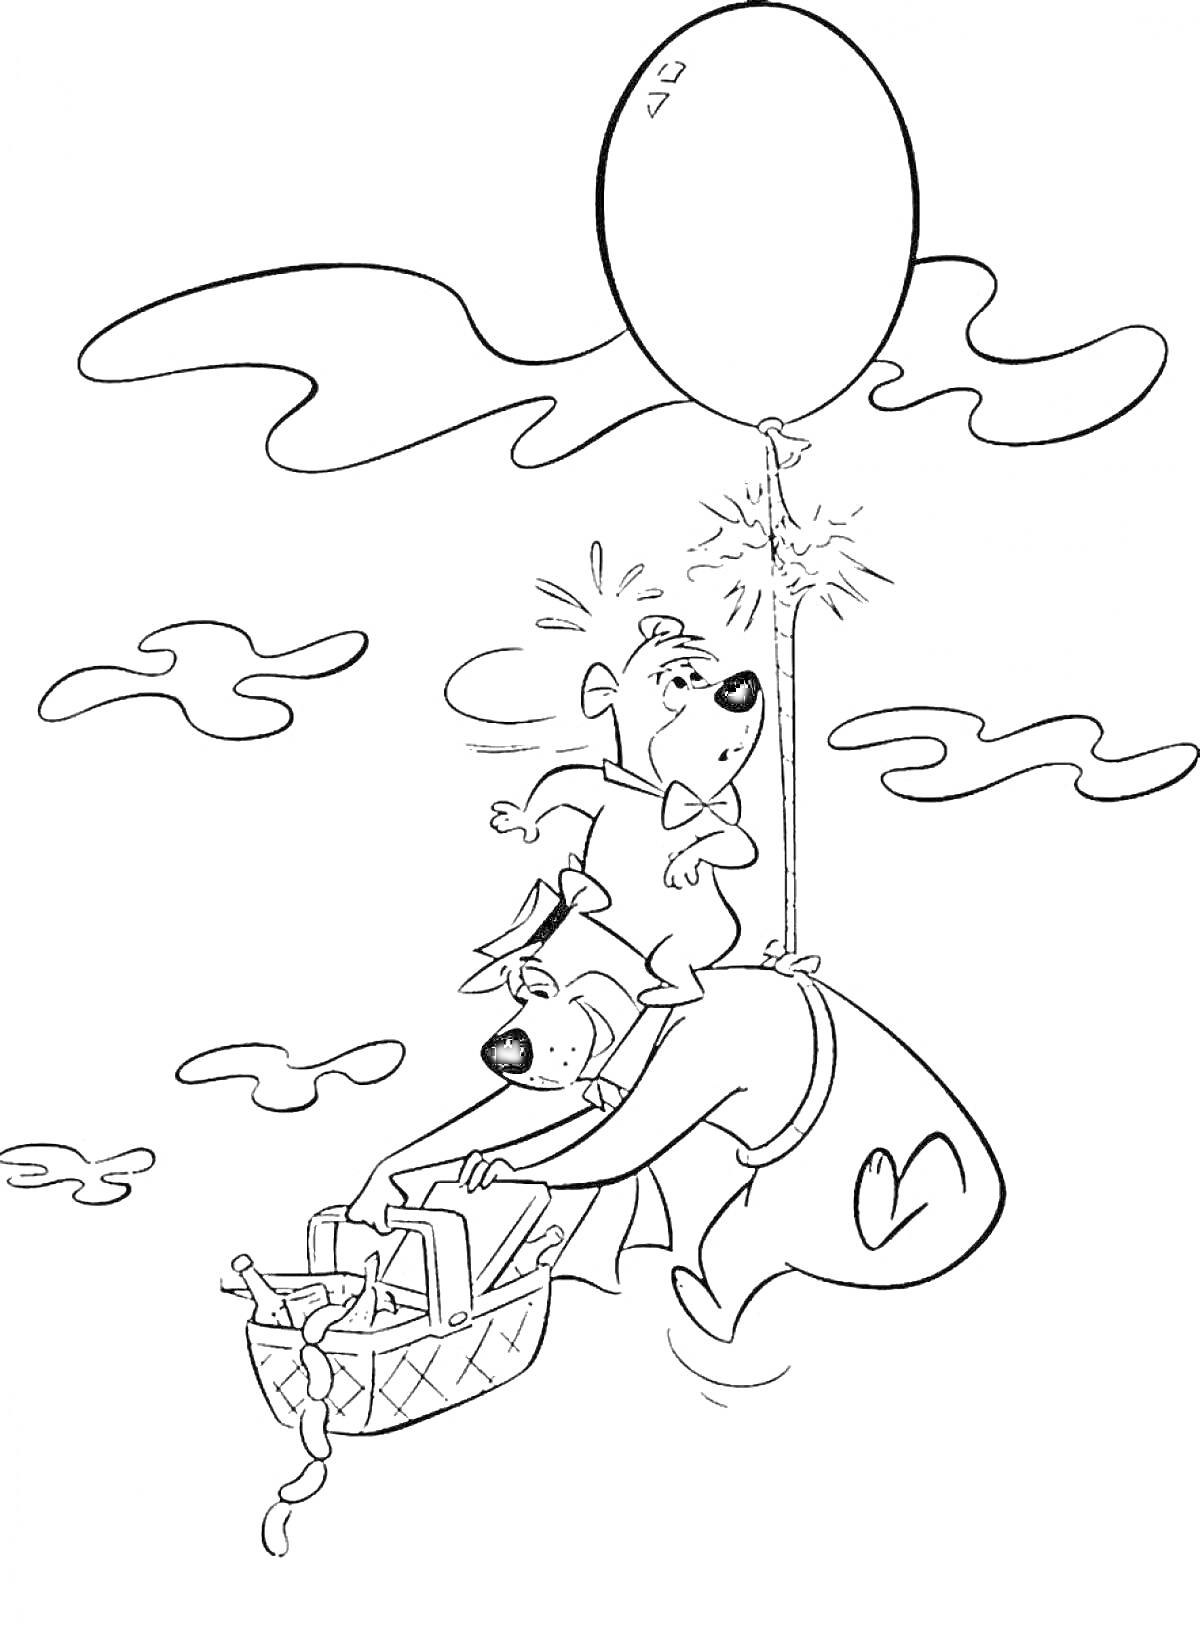 Раскраска Медведь Йоги и его друг Бу-Бу с воздушным шаром, держащие корзину для пикника